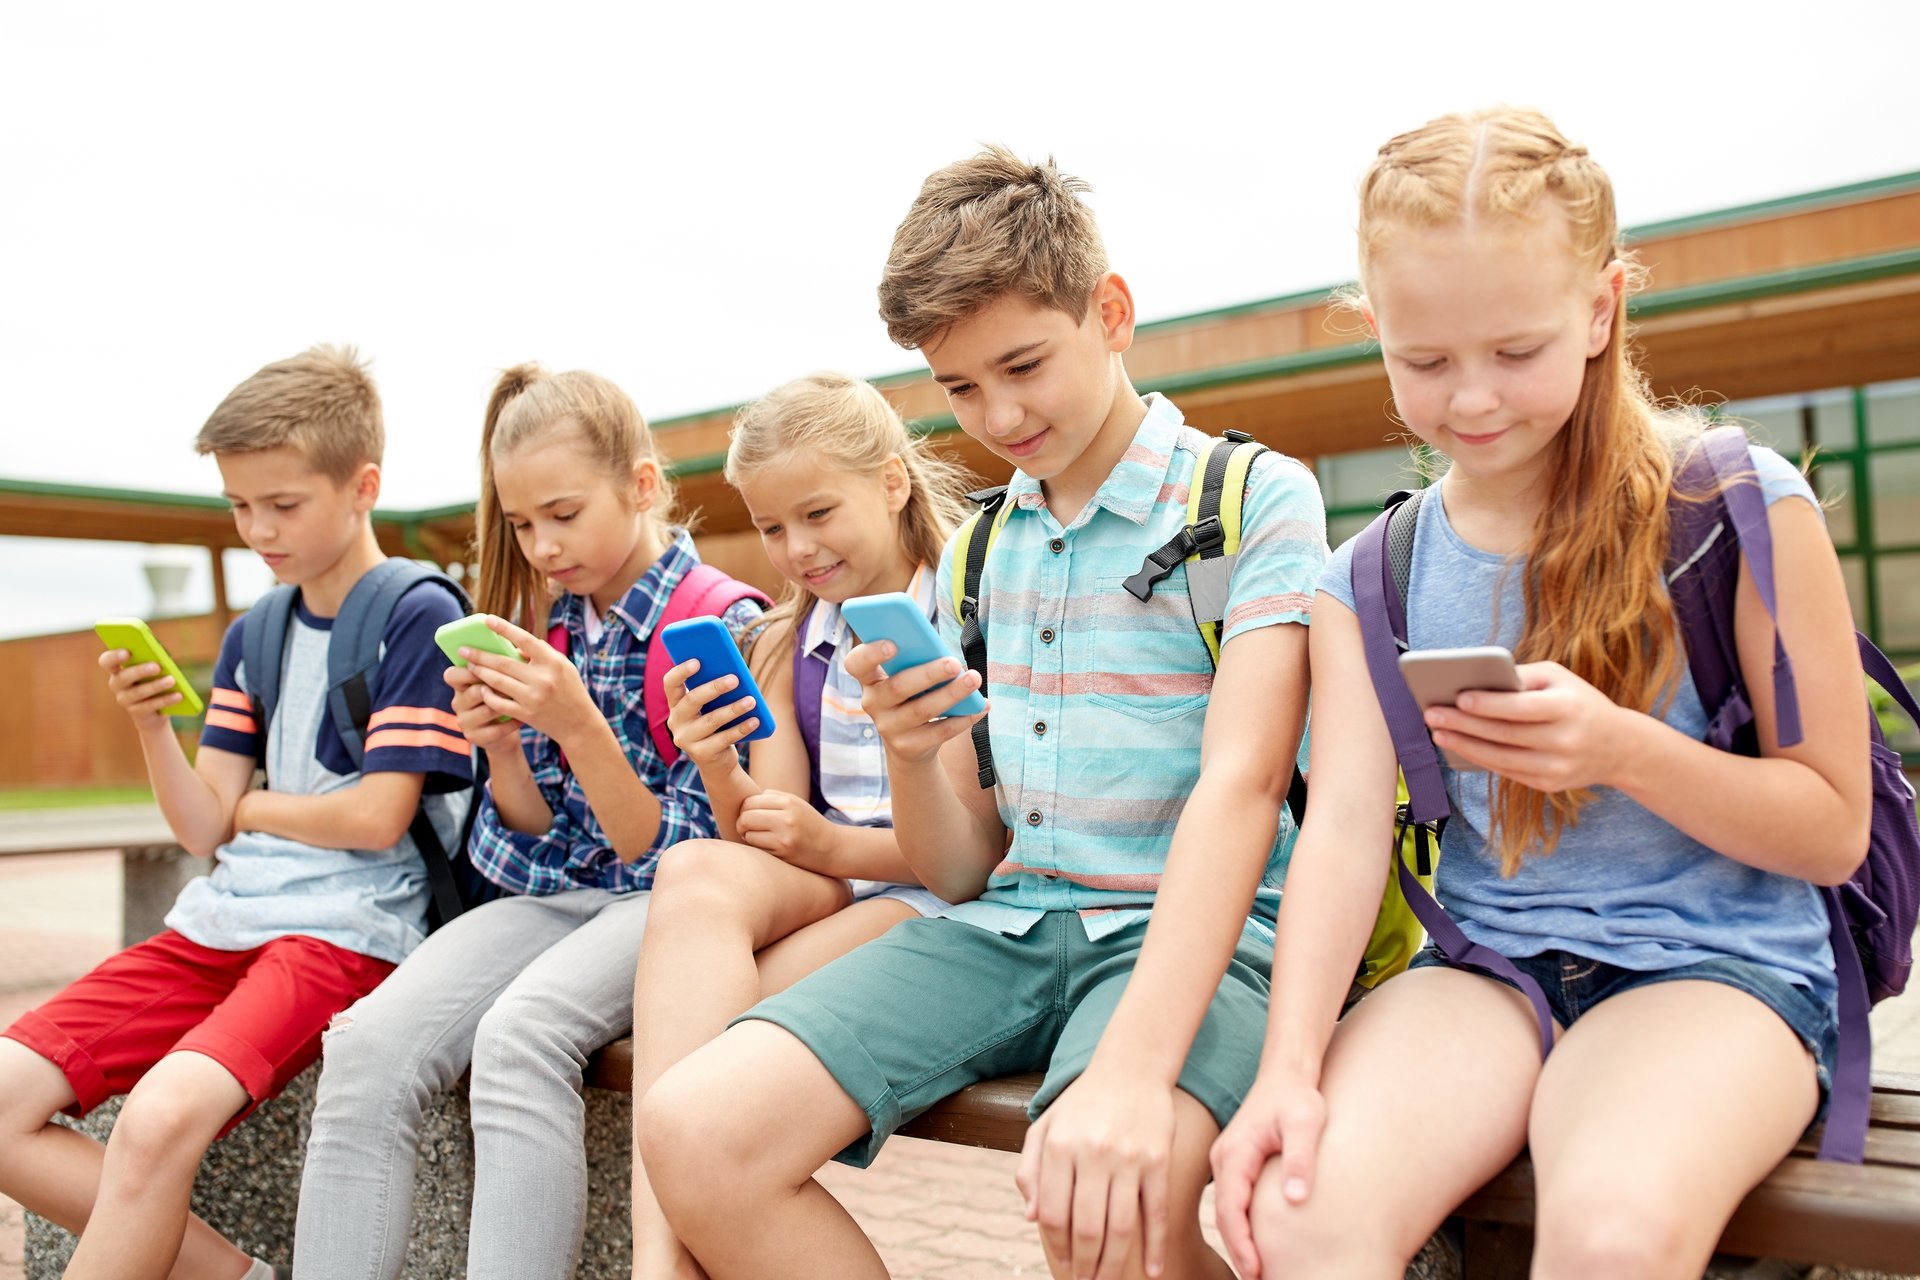 Grade school kids with cellphones